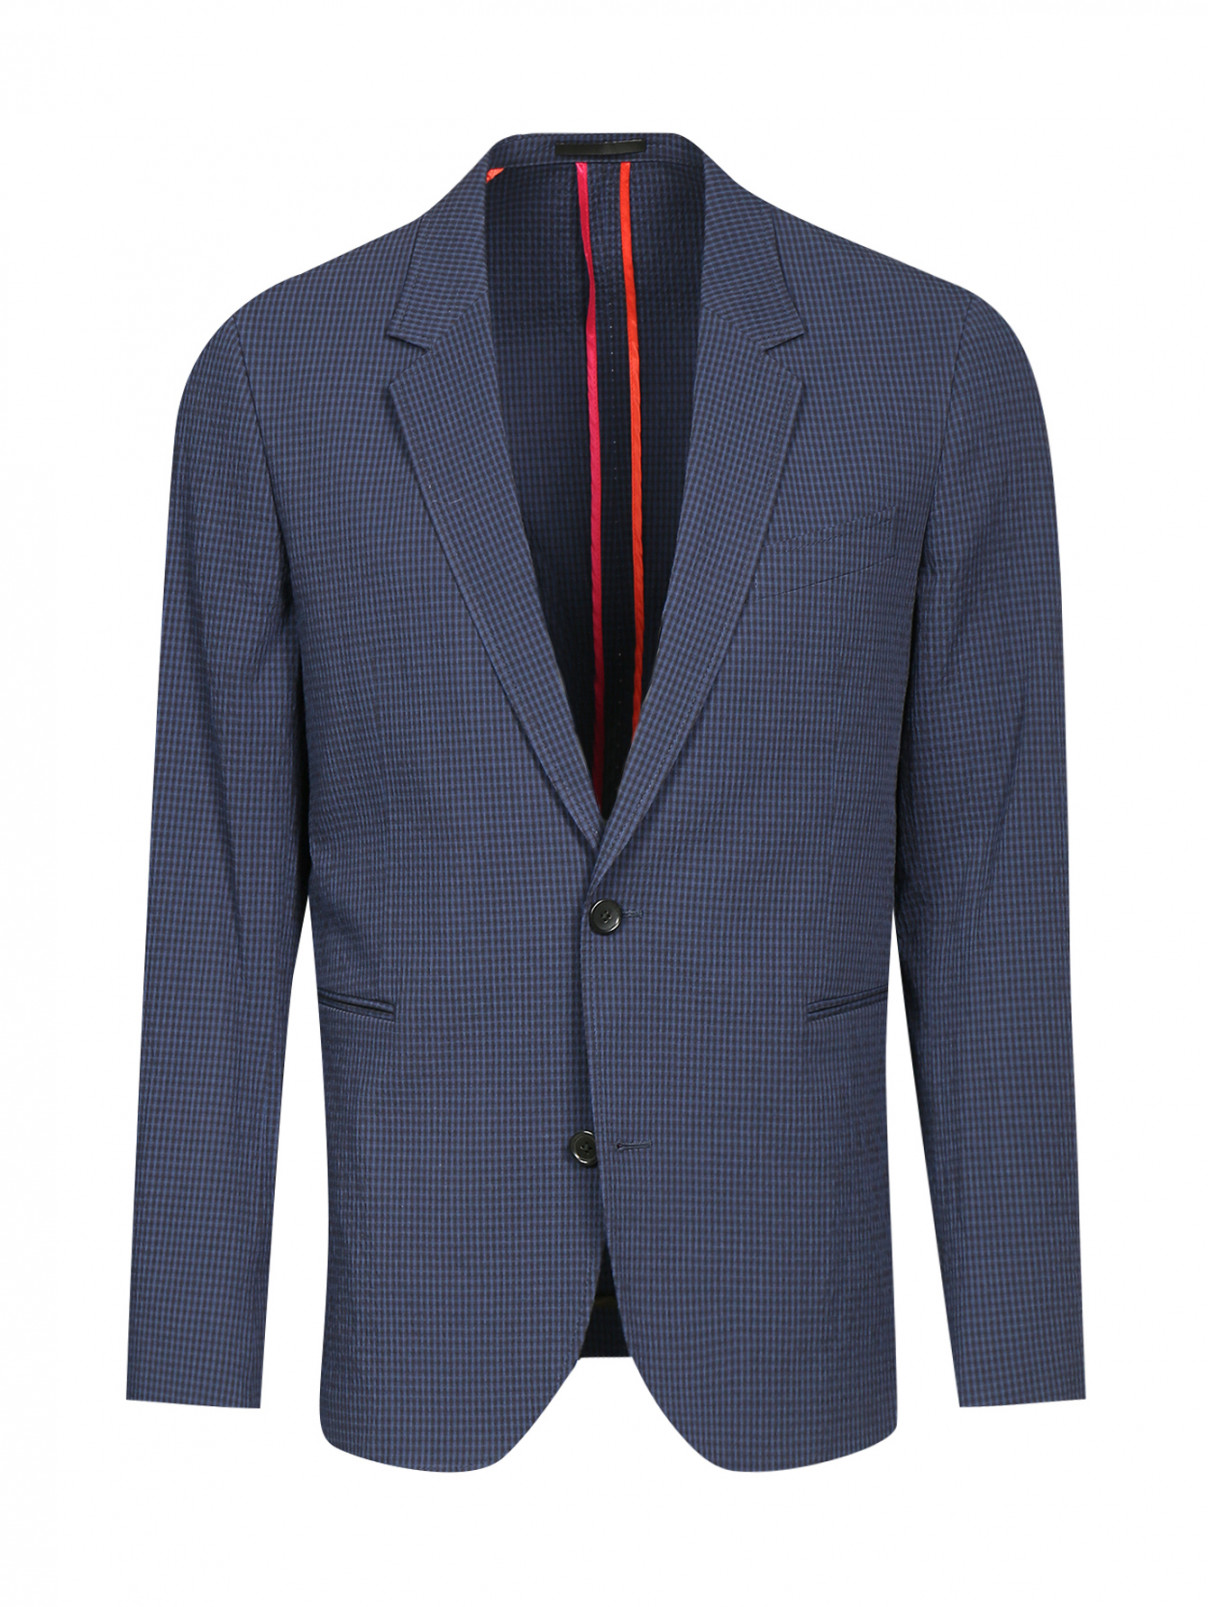 Пиджак однобортный из хлопка Paul Smith  –  Общий вид  – Цвет:  Синий